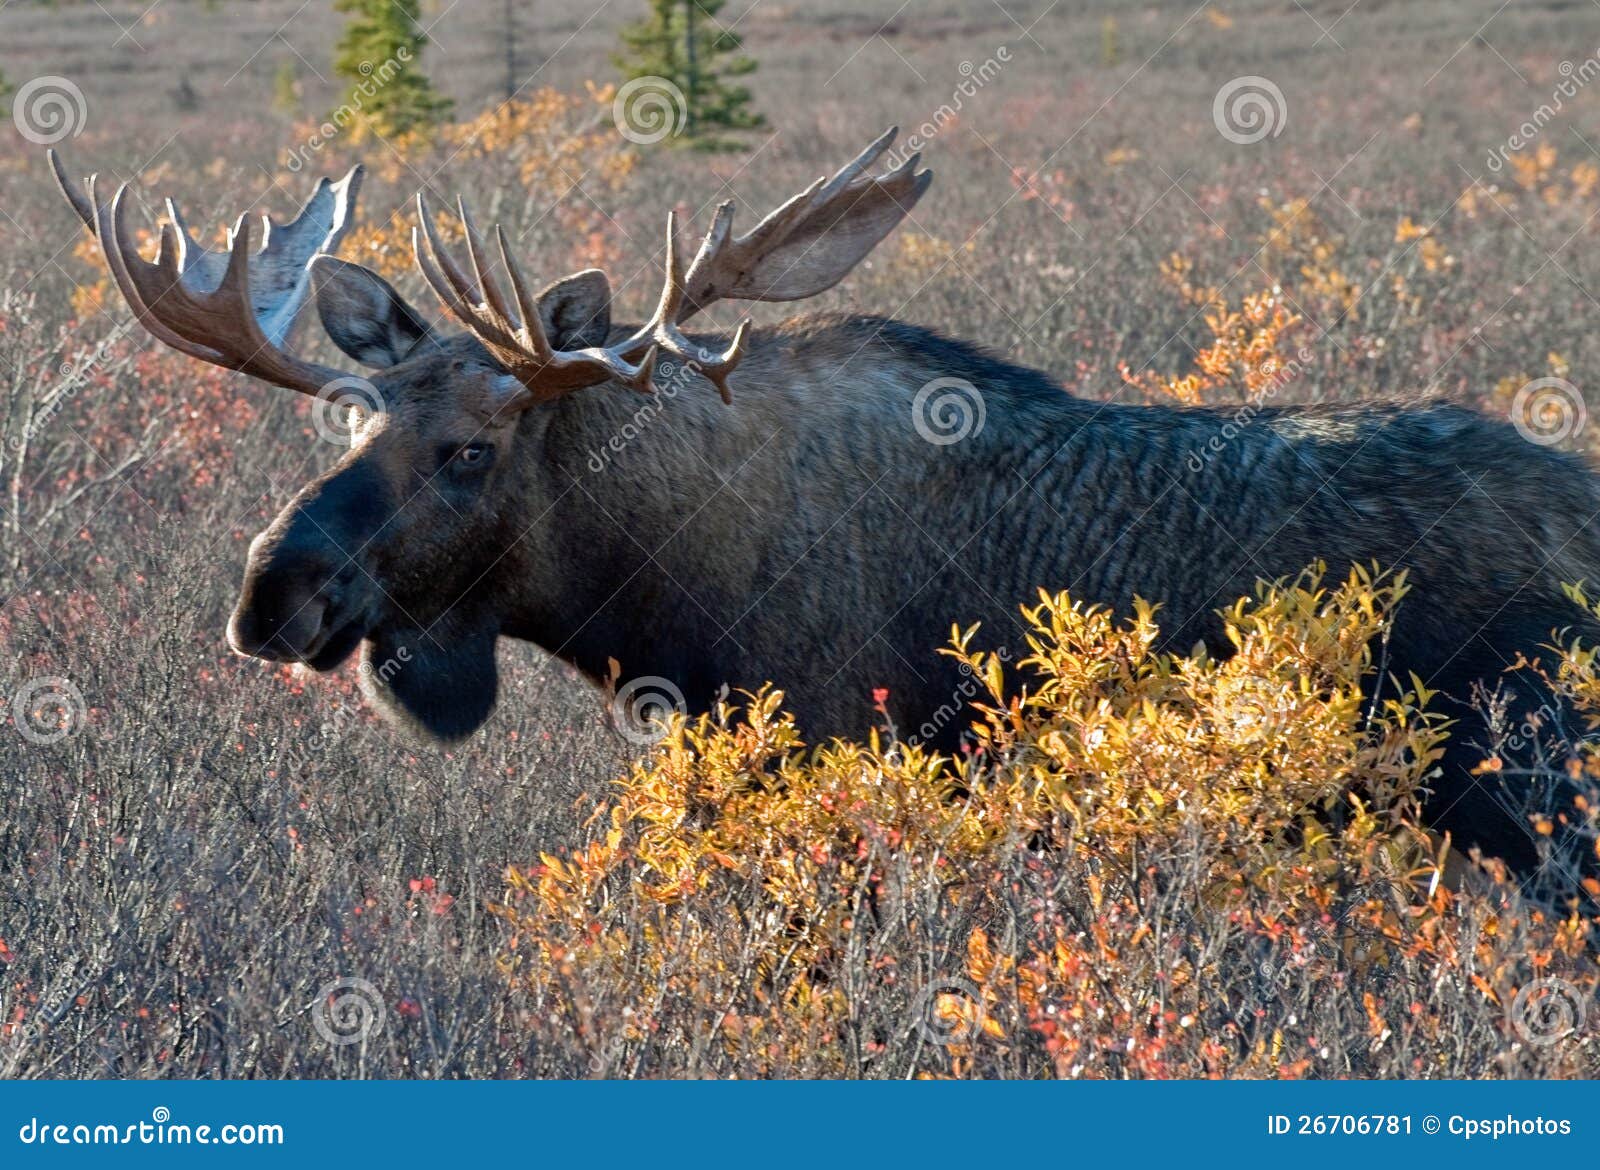 big bull moose